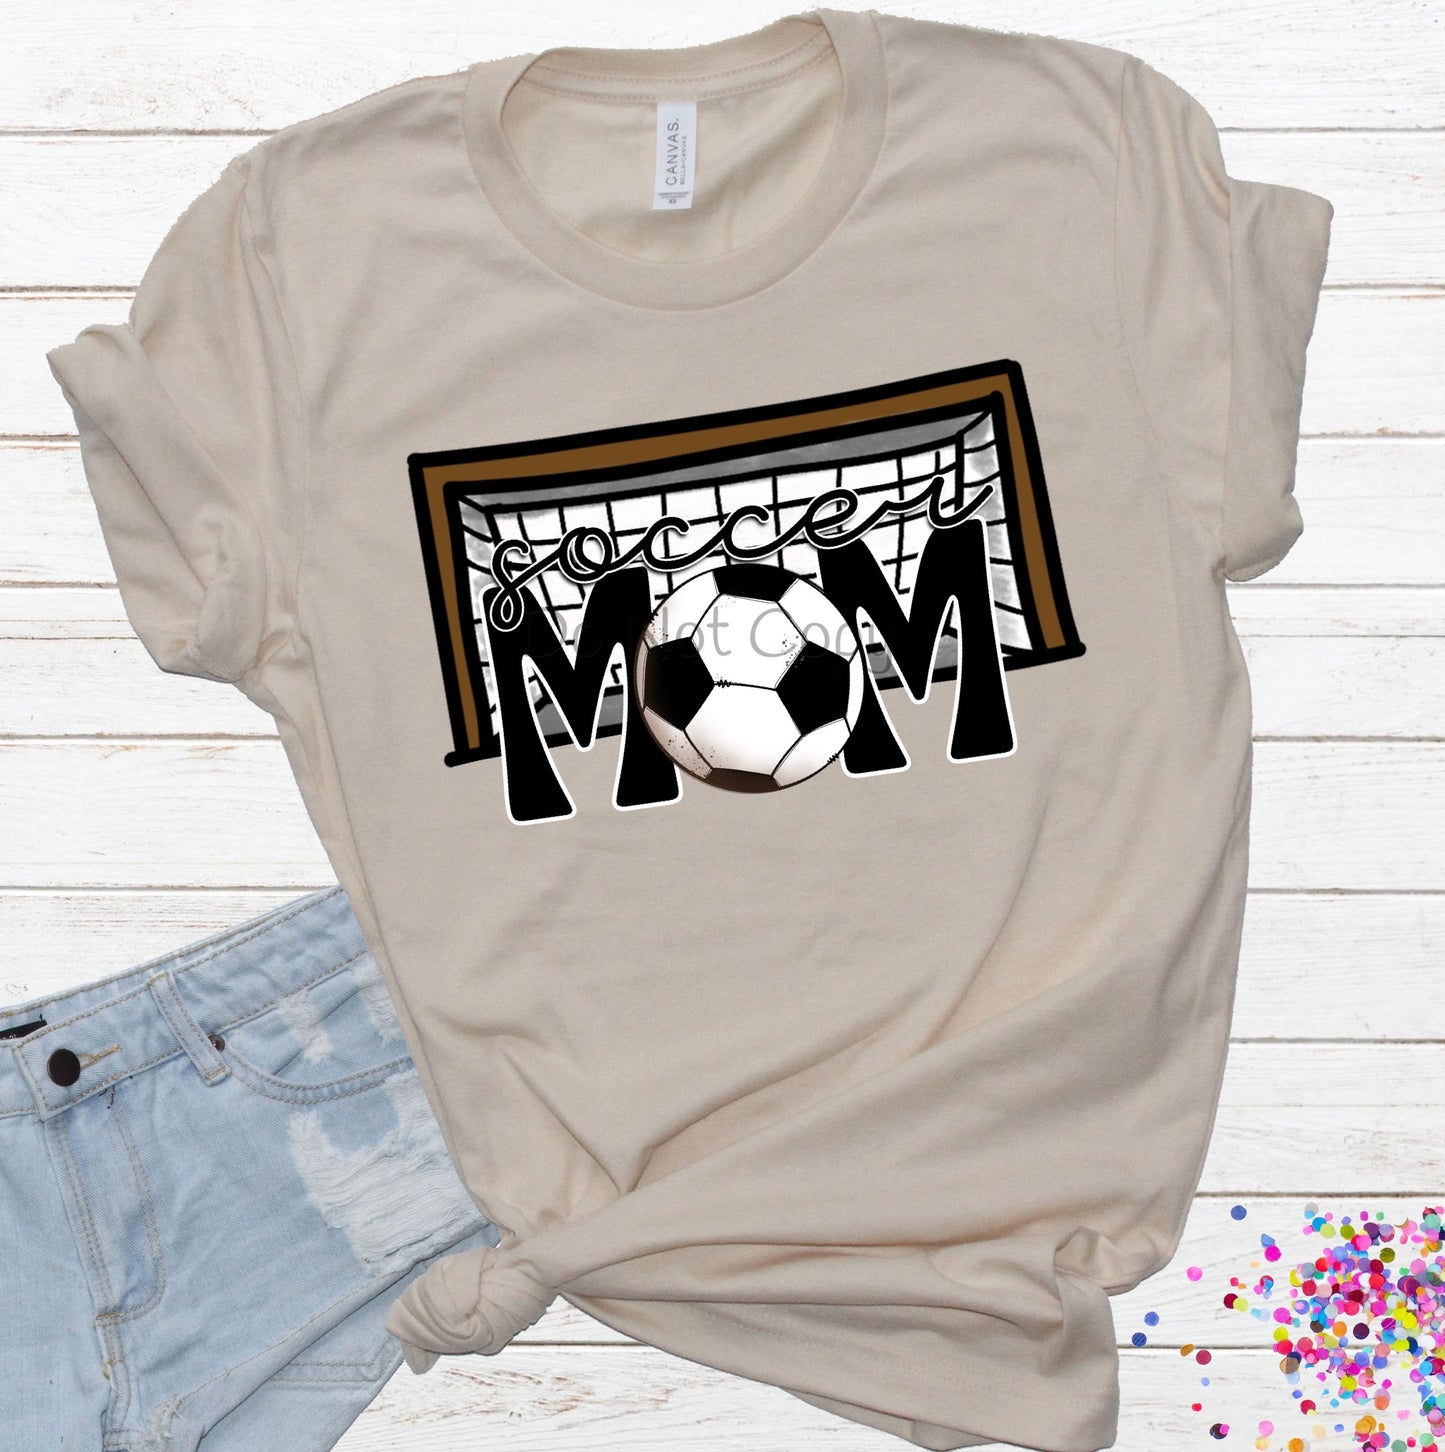 Soccer mom goal-DTF